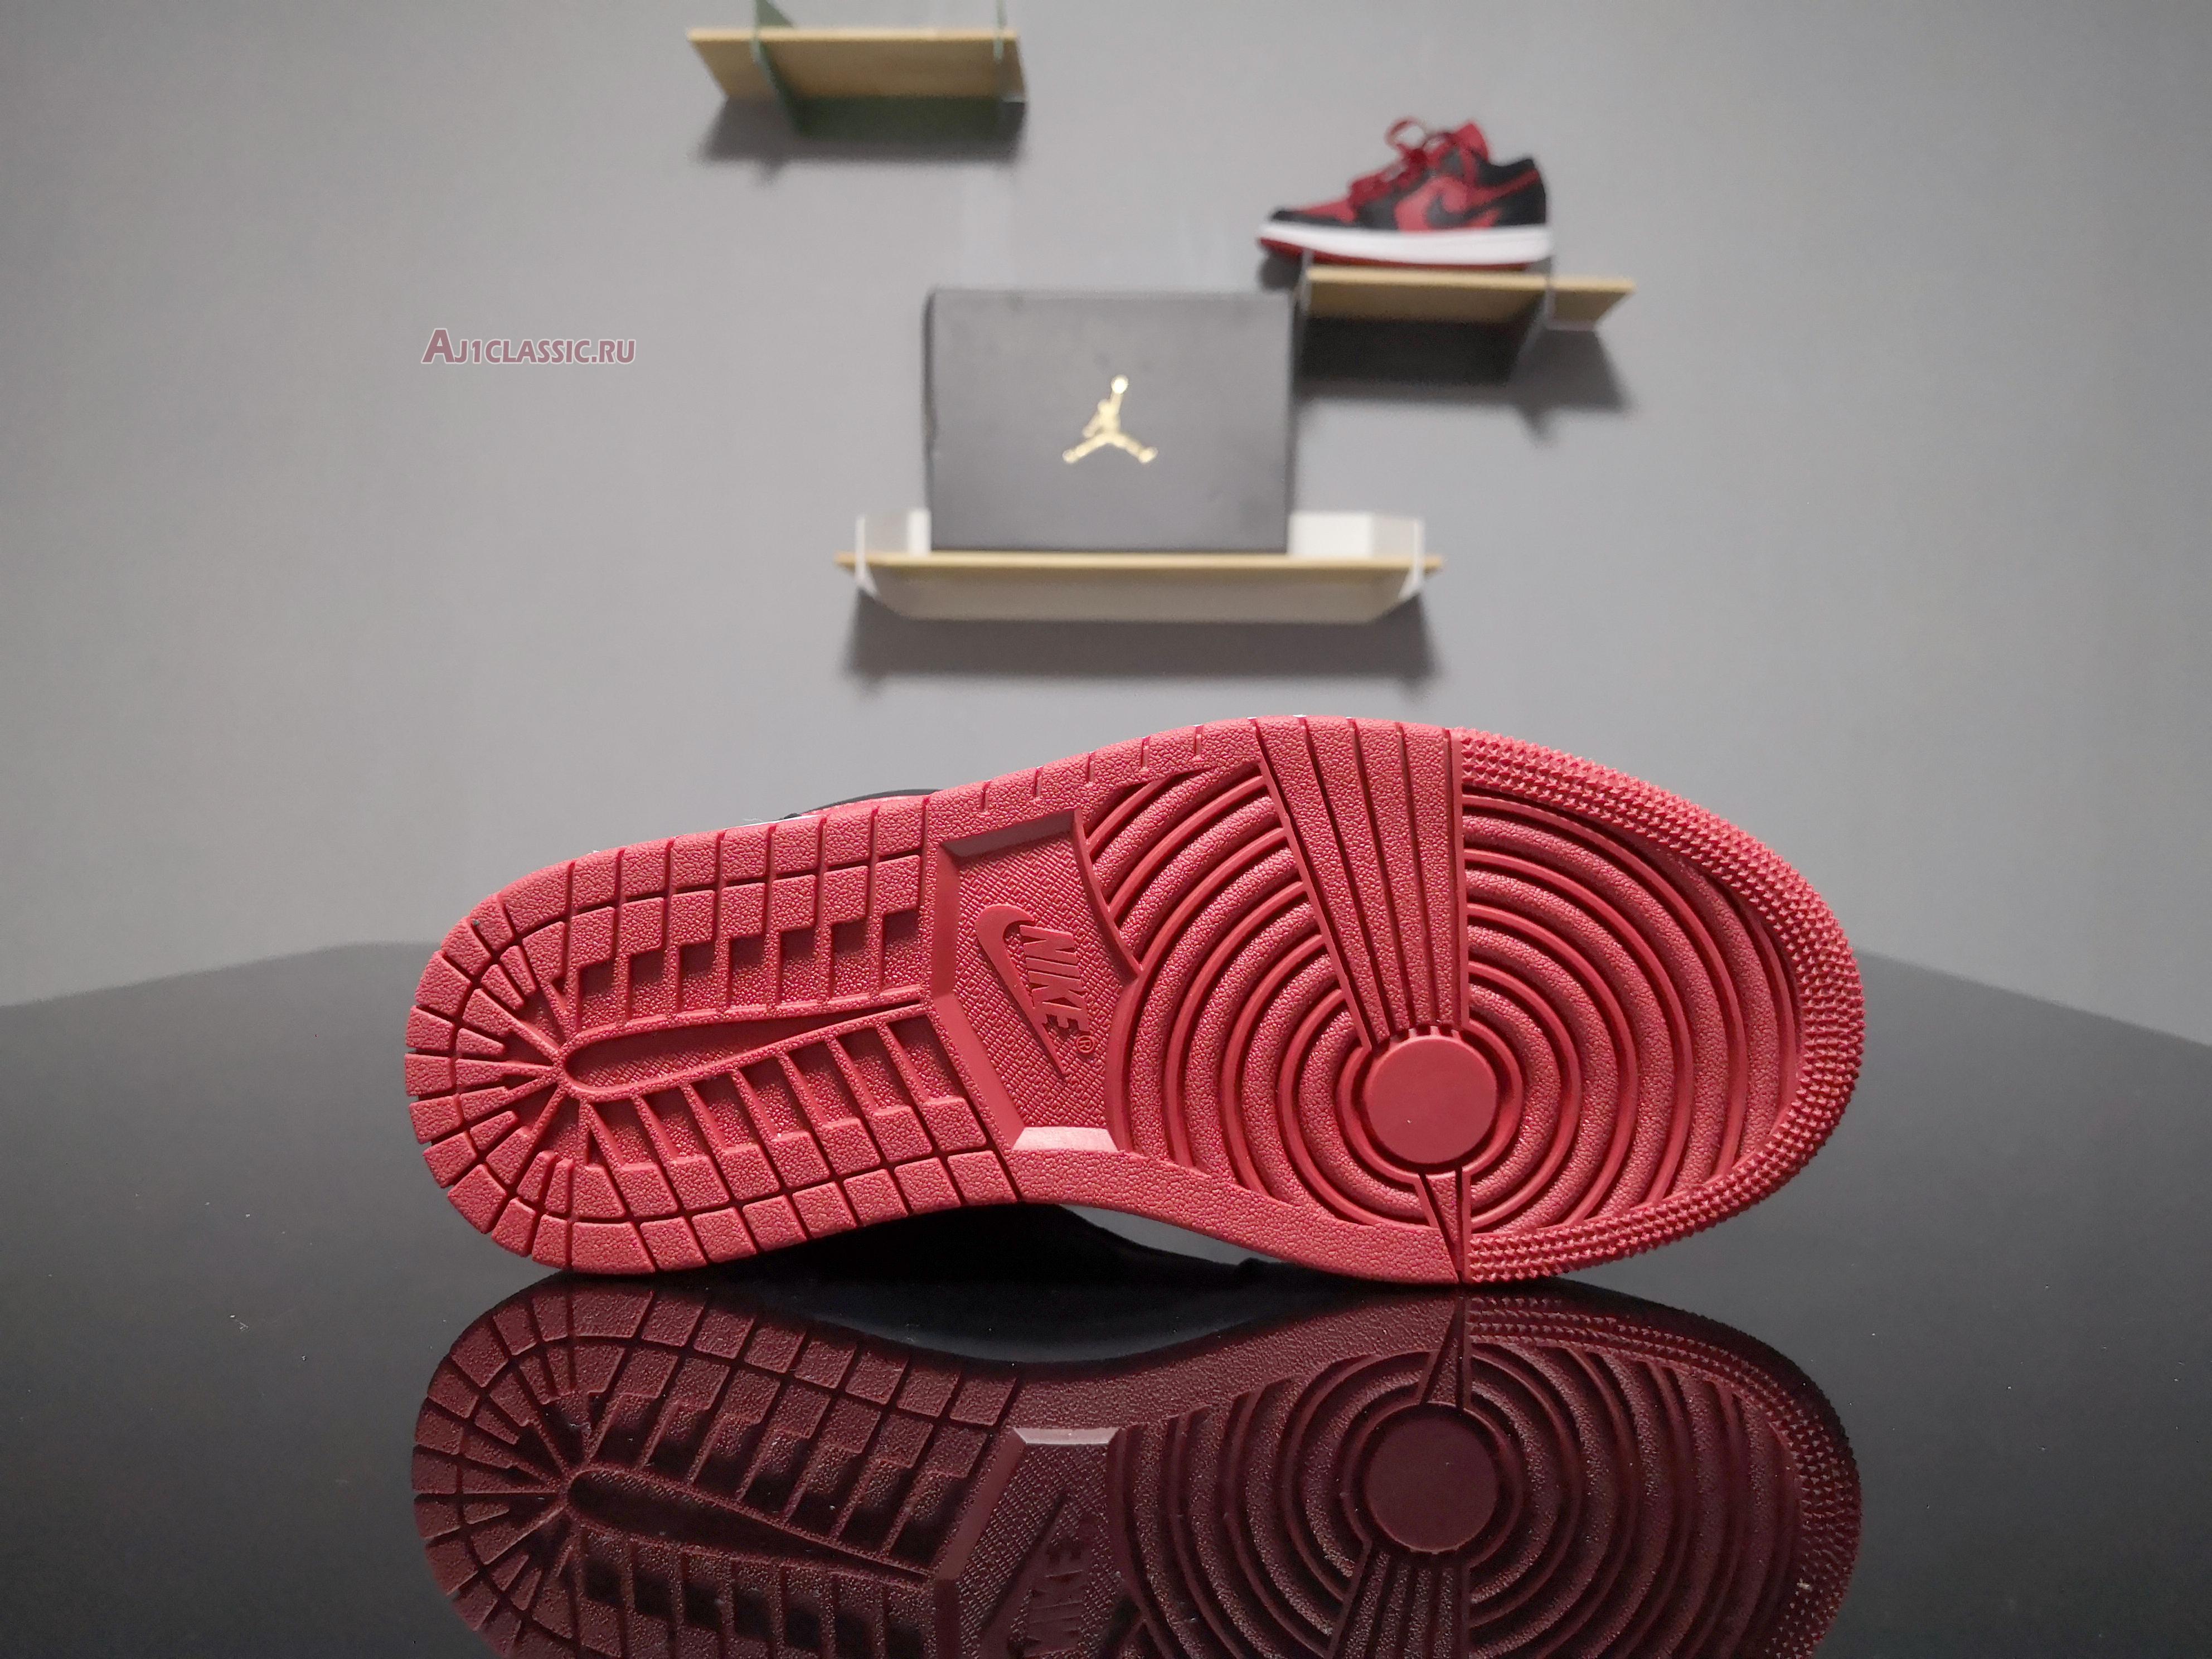 Air Jordan 1 Retro Low "Gym Red" 553558-610